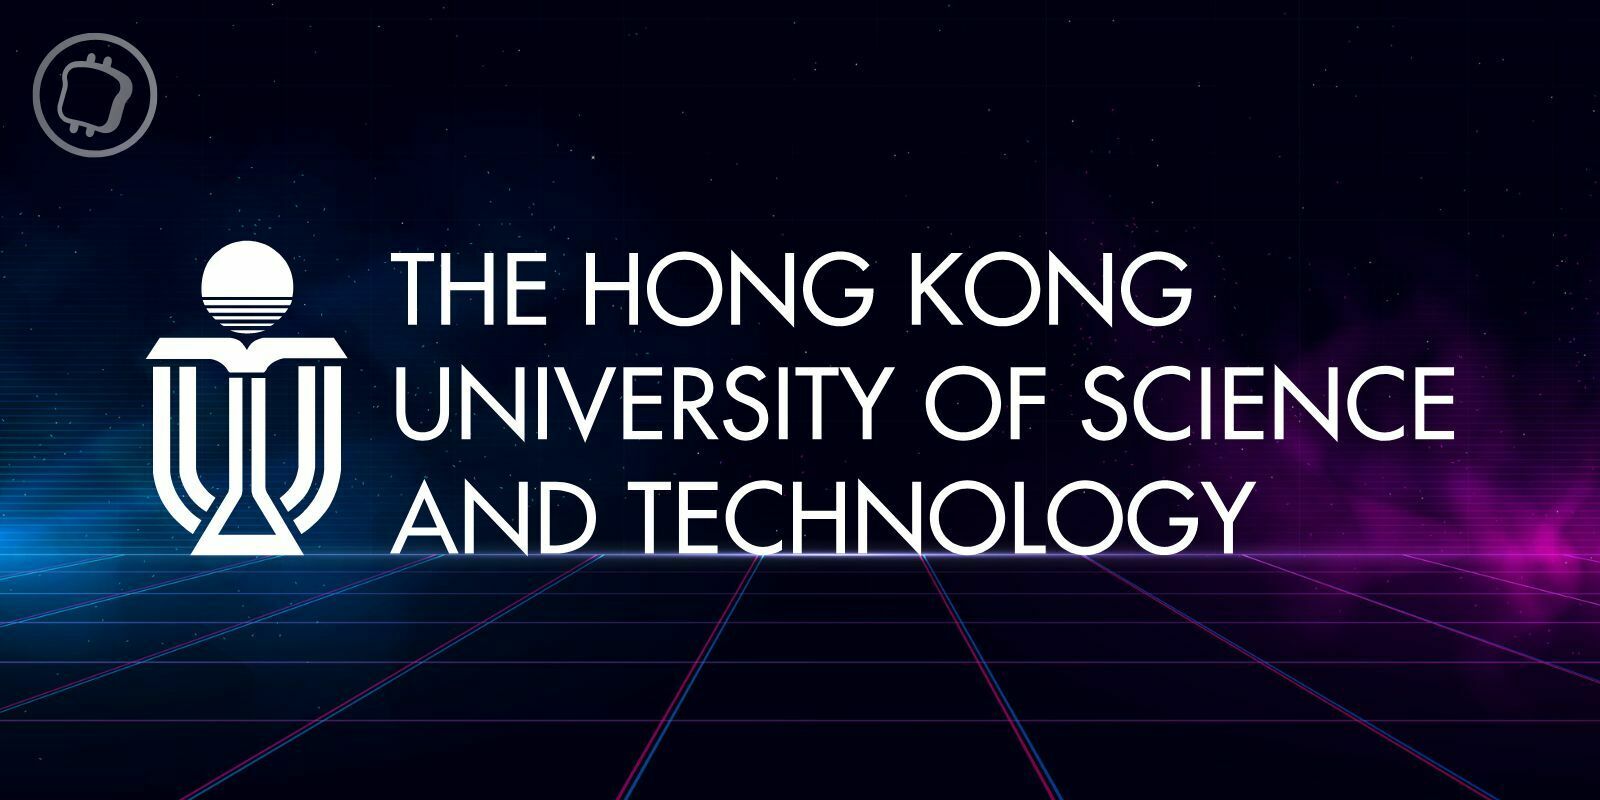 Web3 : une université de Hong Kong va lancer des campus dans le metaverse